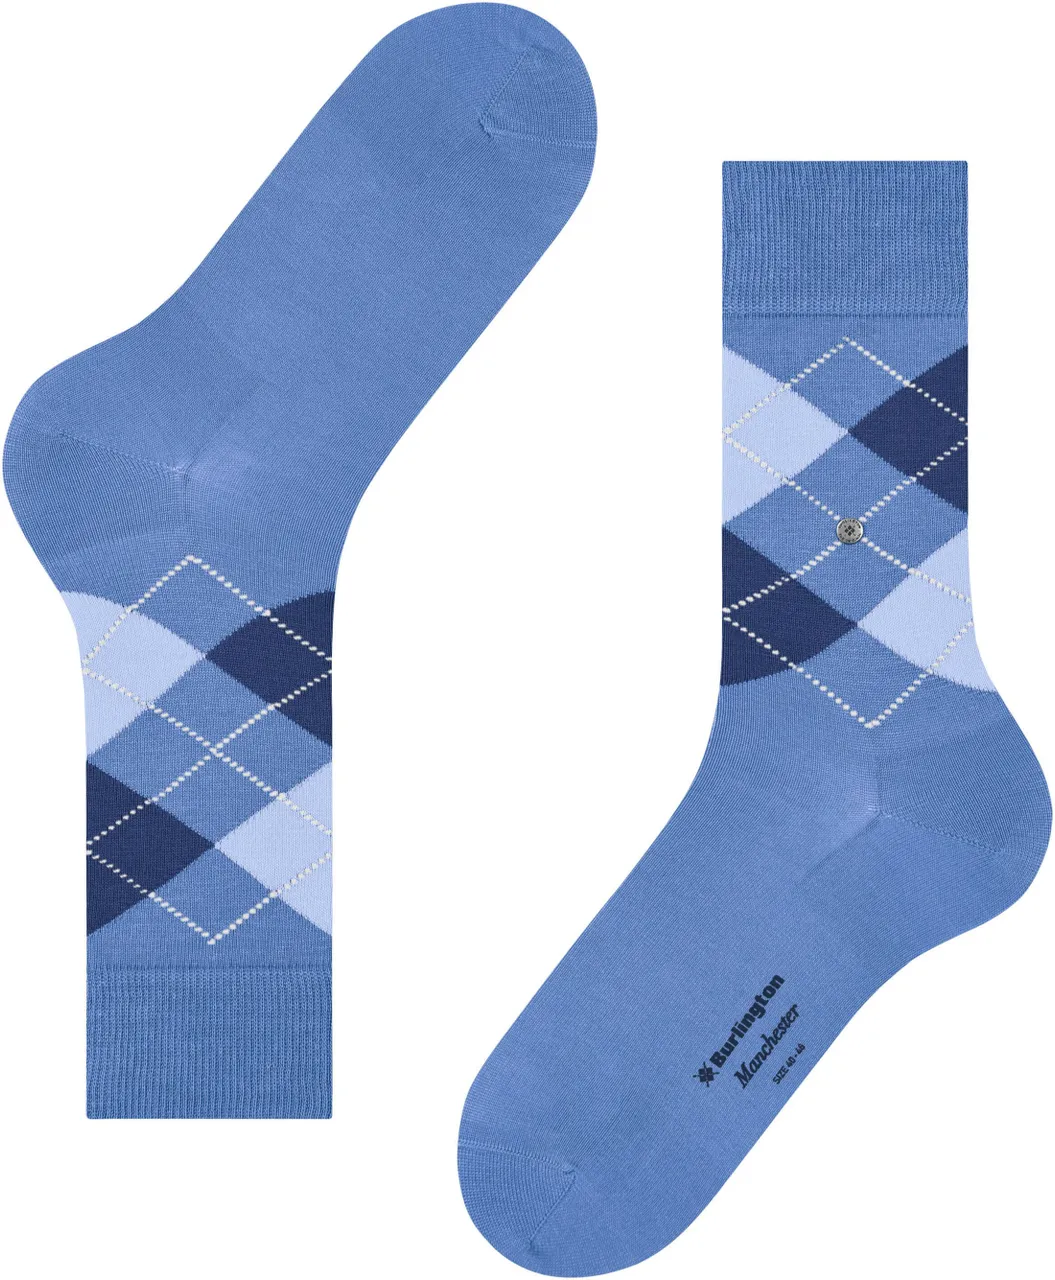 Burlington Manchester Socks Checkered 6550 Blue